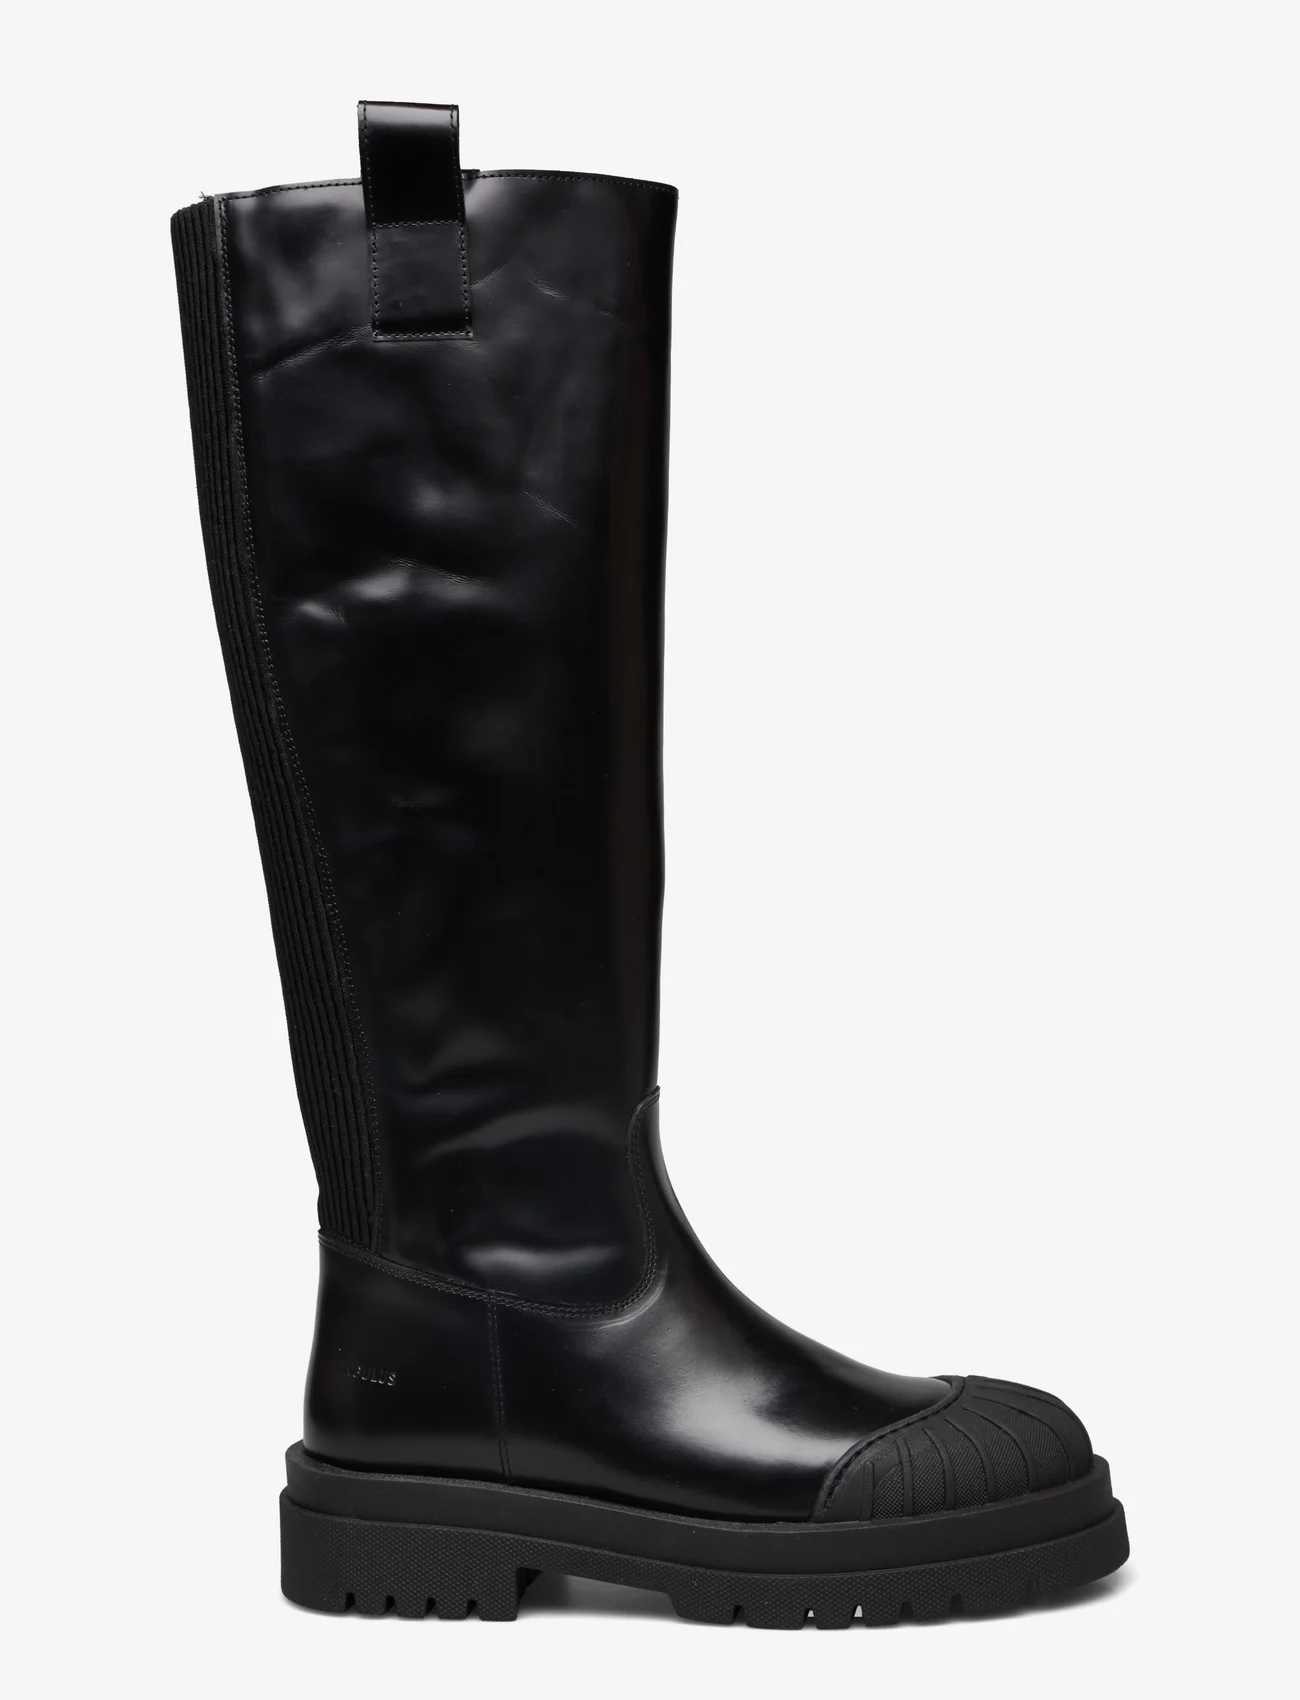 ANGULUS - Boots - flat - pitkävartiset saappaat - 1425/019 black/black - 1